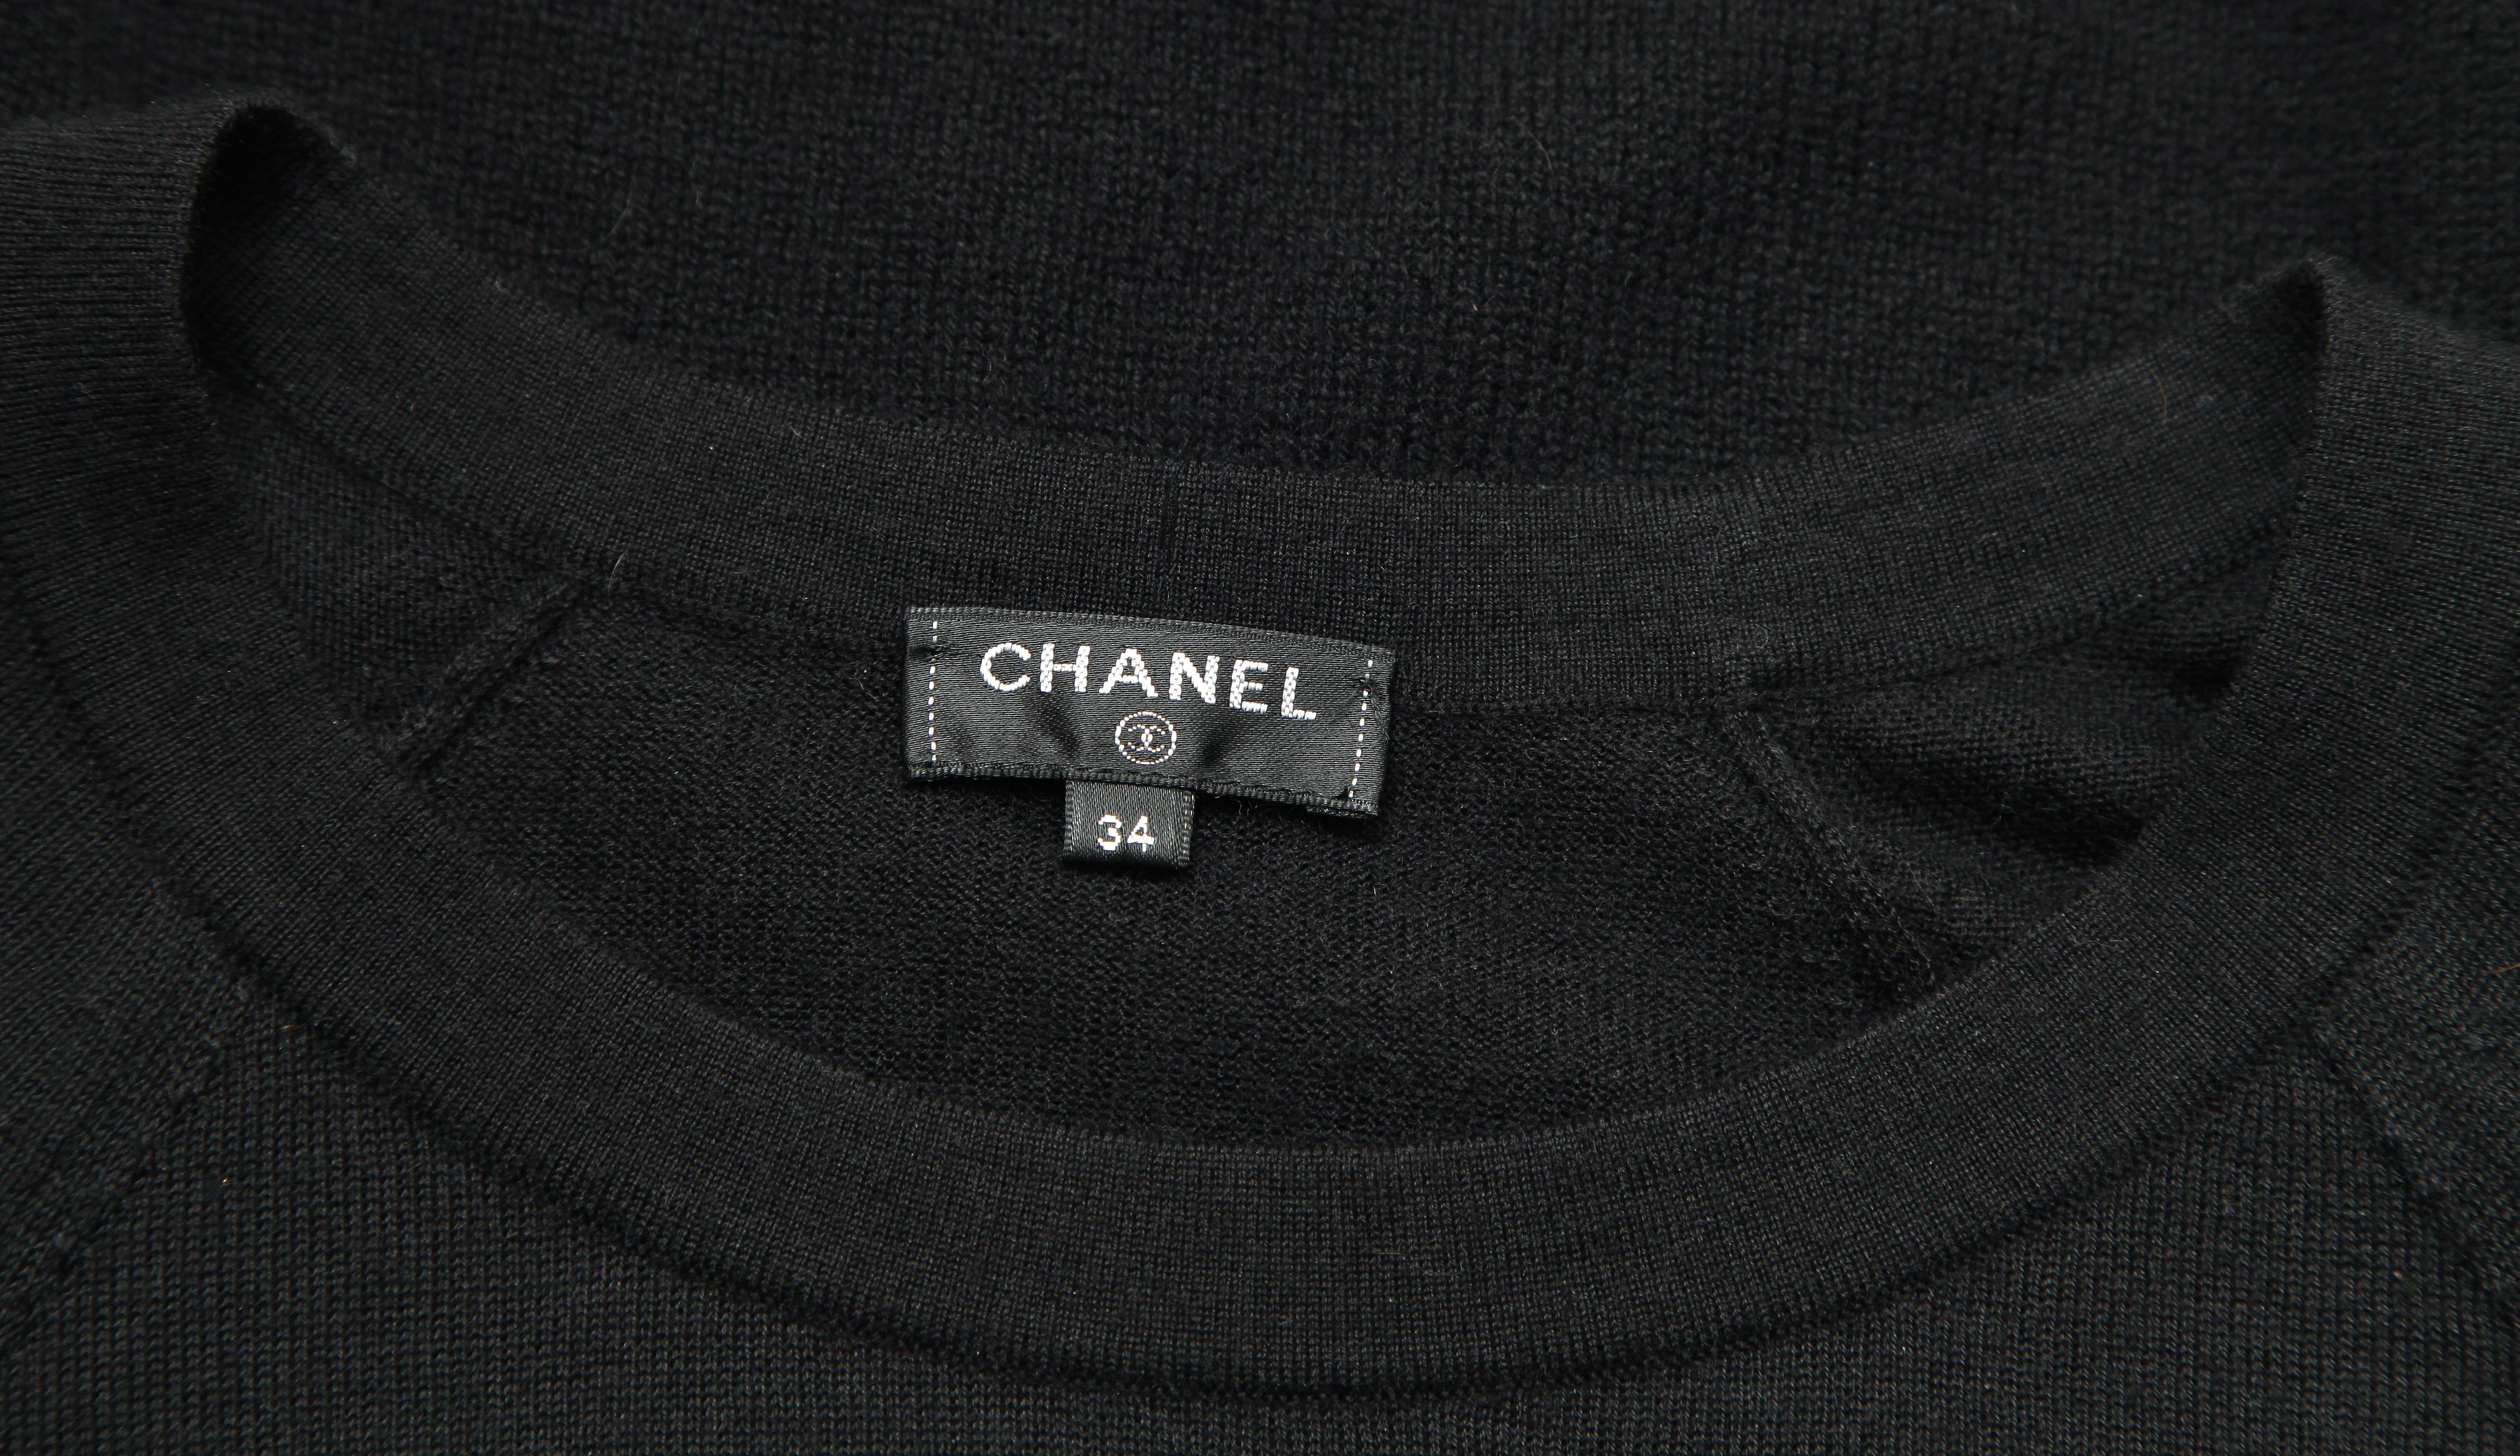 CHANEL Black Sweater Knit Top Long Sleeve Gold Tone Belt Tie Zipper HW Sz 34 en vente 2